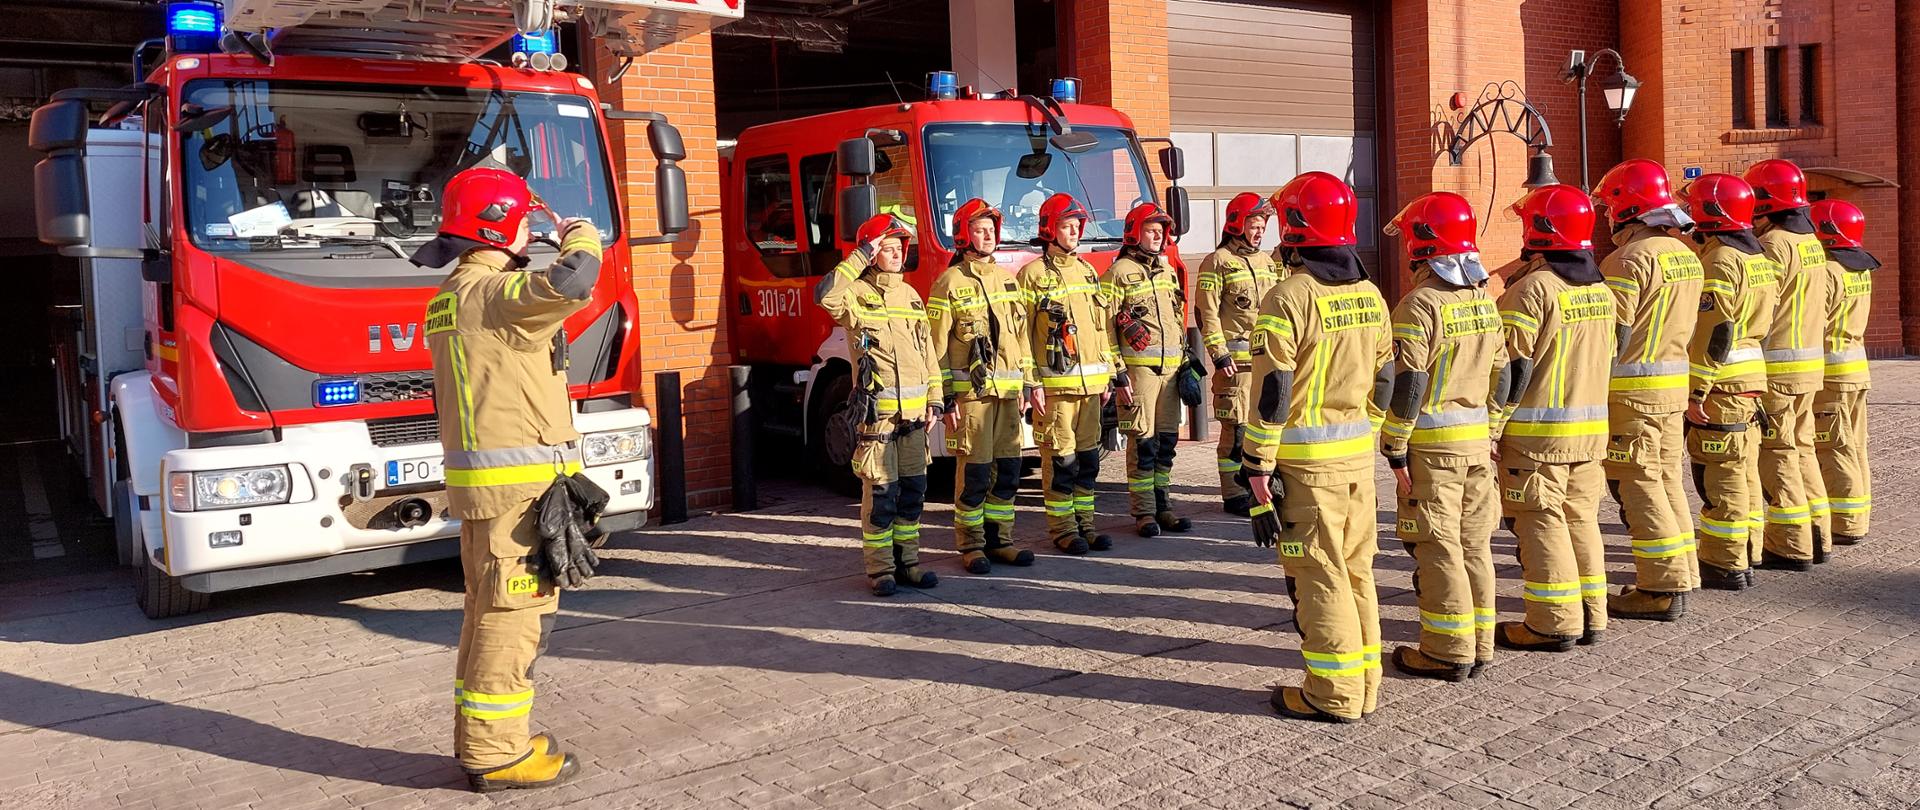 Strażacy z Komendy Miejskiej PSP w Poznaniu oddający przed strażnicą hołd poległym ukraińskim strażakom